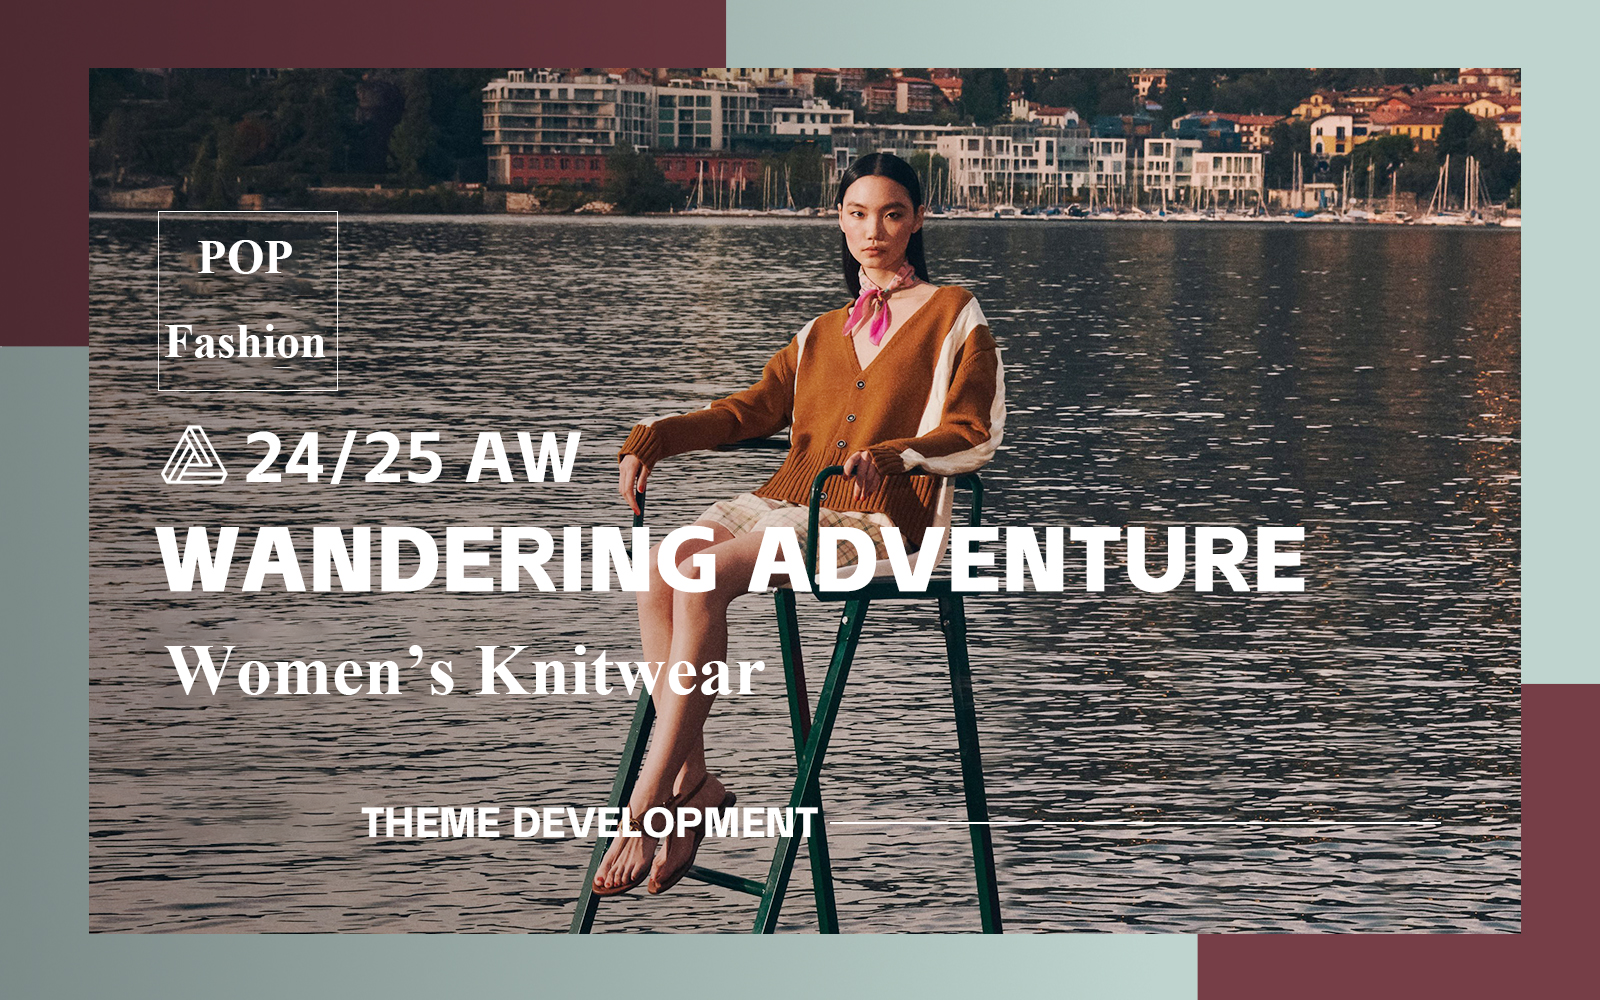 Wandering Adventure -- A/W 24/25 Design Development of Women's Knitwear